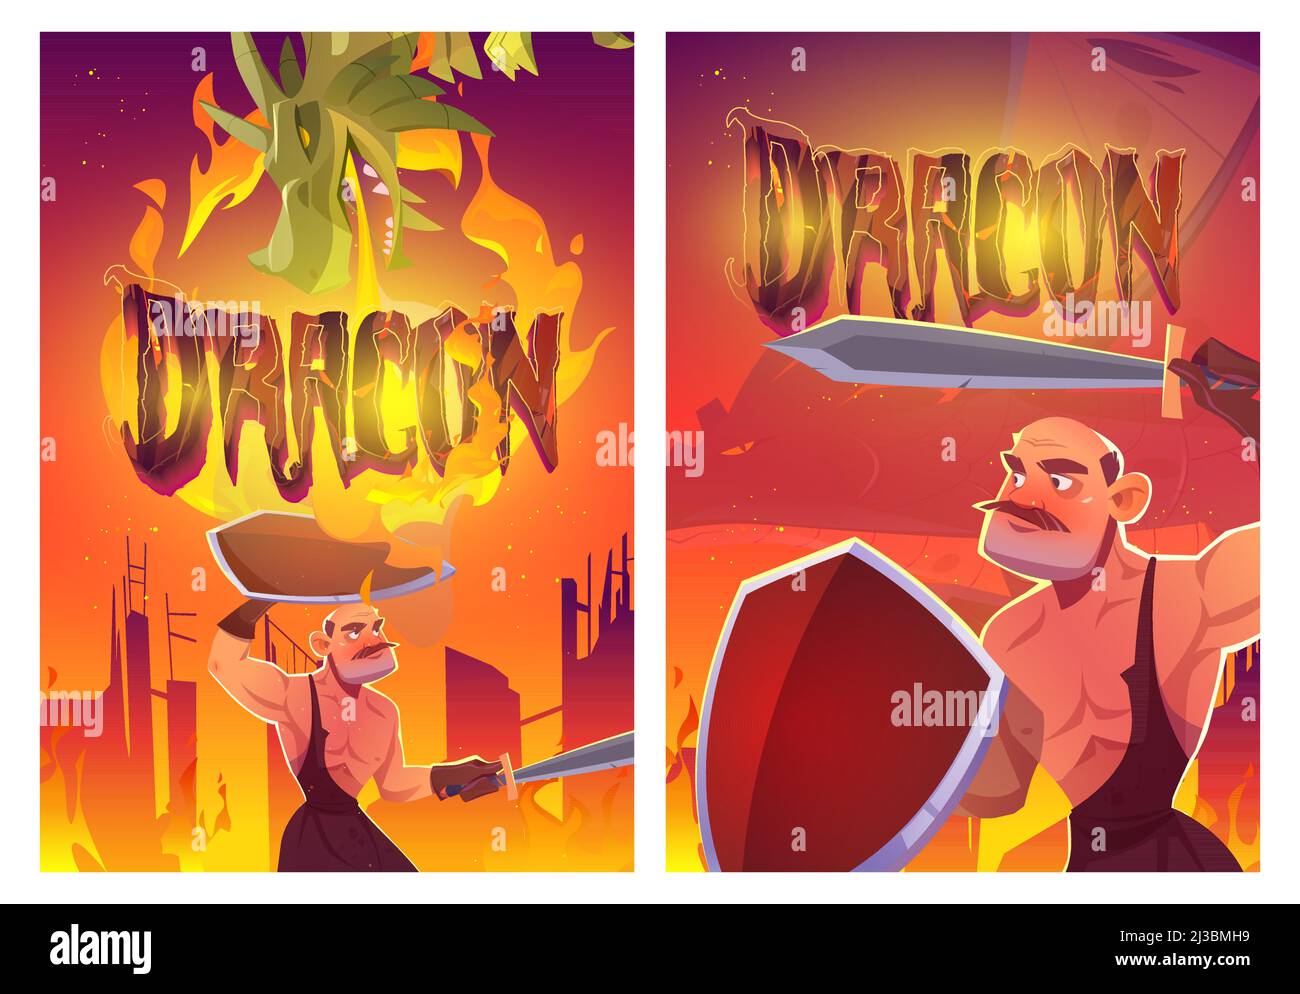 Dragon Attack Chevalier affiches de dessin animé, caractère magique respiration avec le feu de combat avec guerrier médiéval avec épée et bouclier. Scène épique de fairyta Illustration de Vecteur